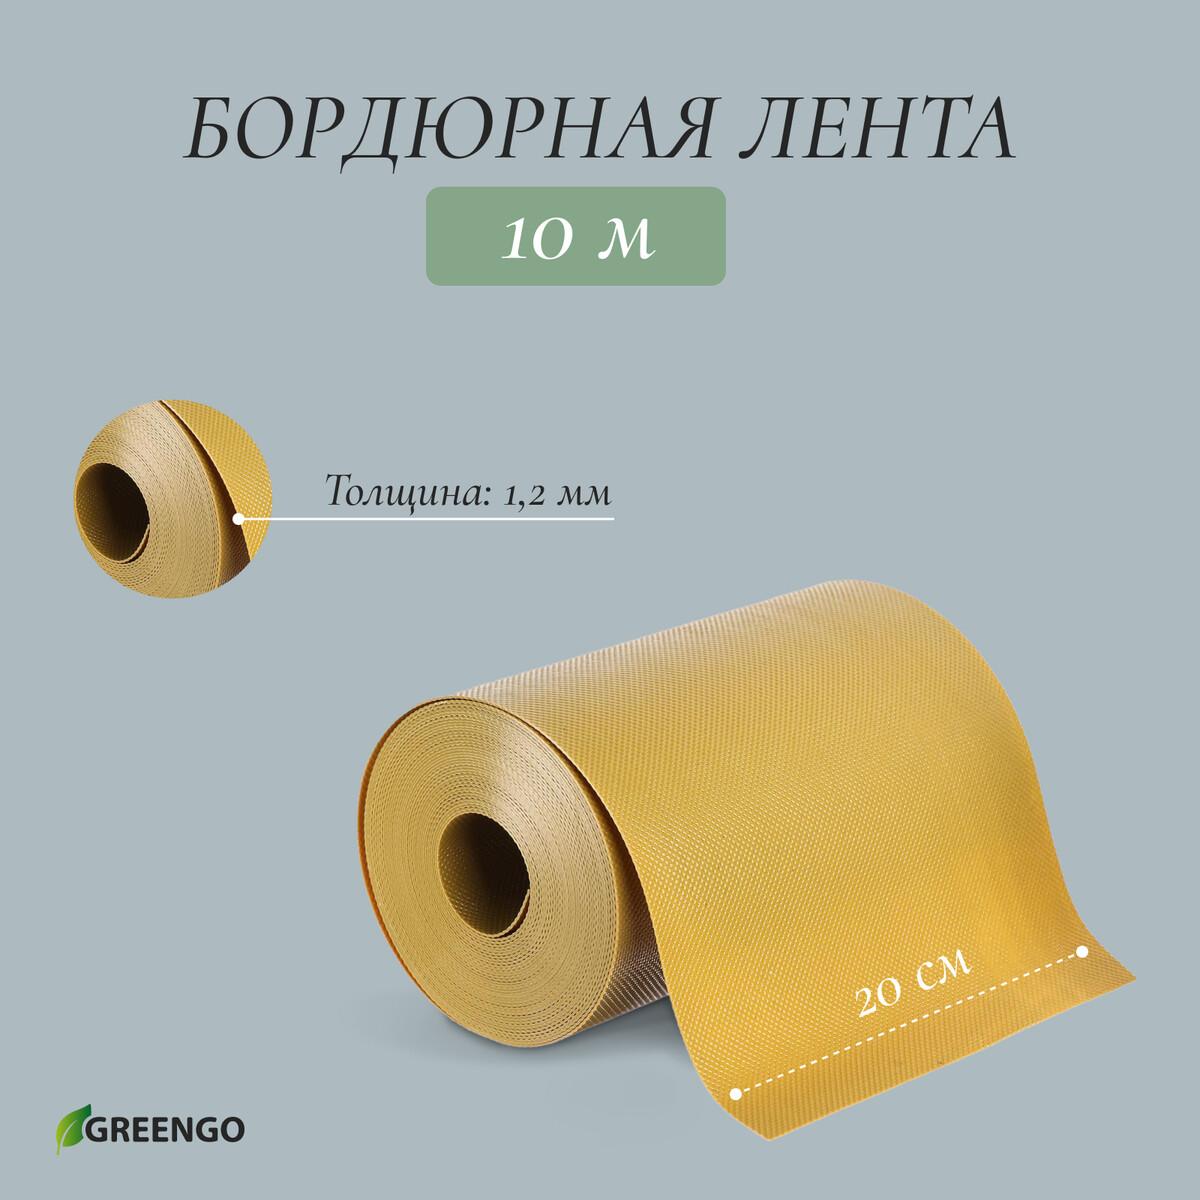 Лента бордюрная, 0.2 × 10 м, толщина 1.2 мм, пластиковая, желтая, greengo лента бордюрная 0 1 × 10 м толщина 1 2 мм пластиковая коричневая greengo